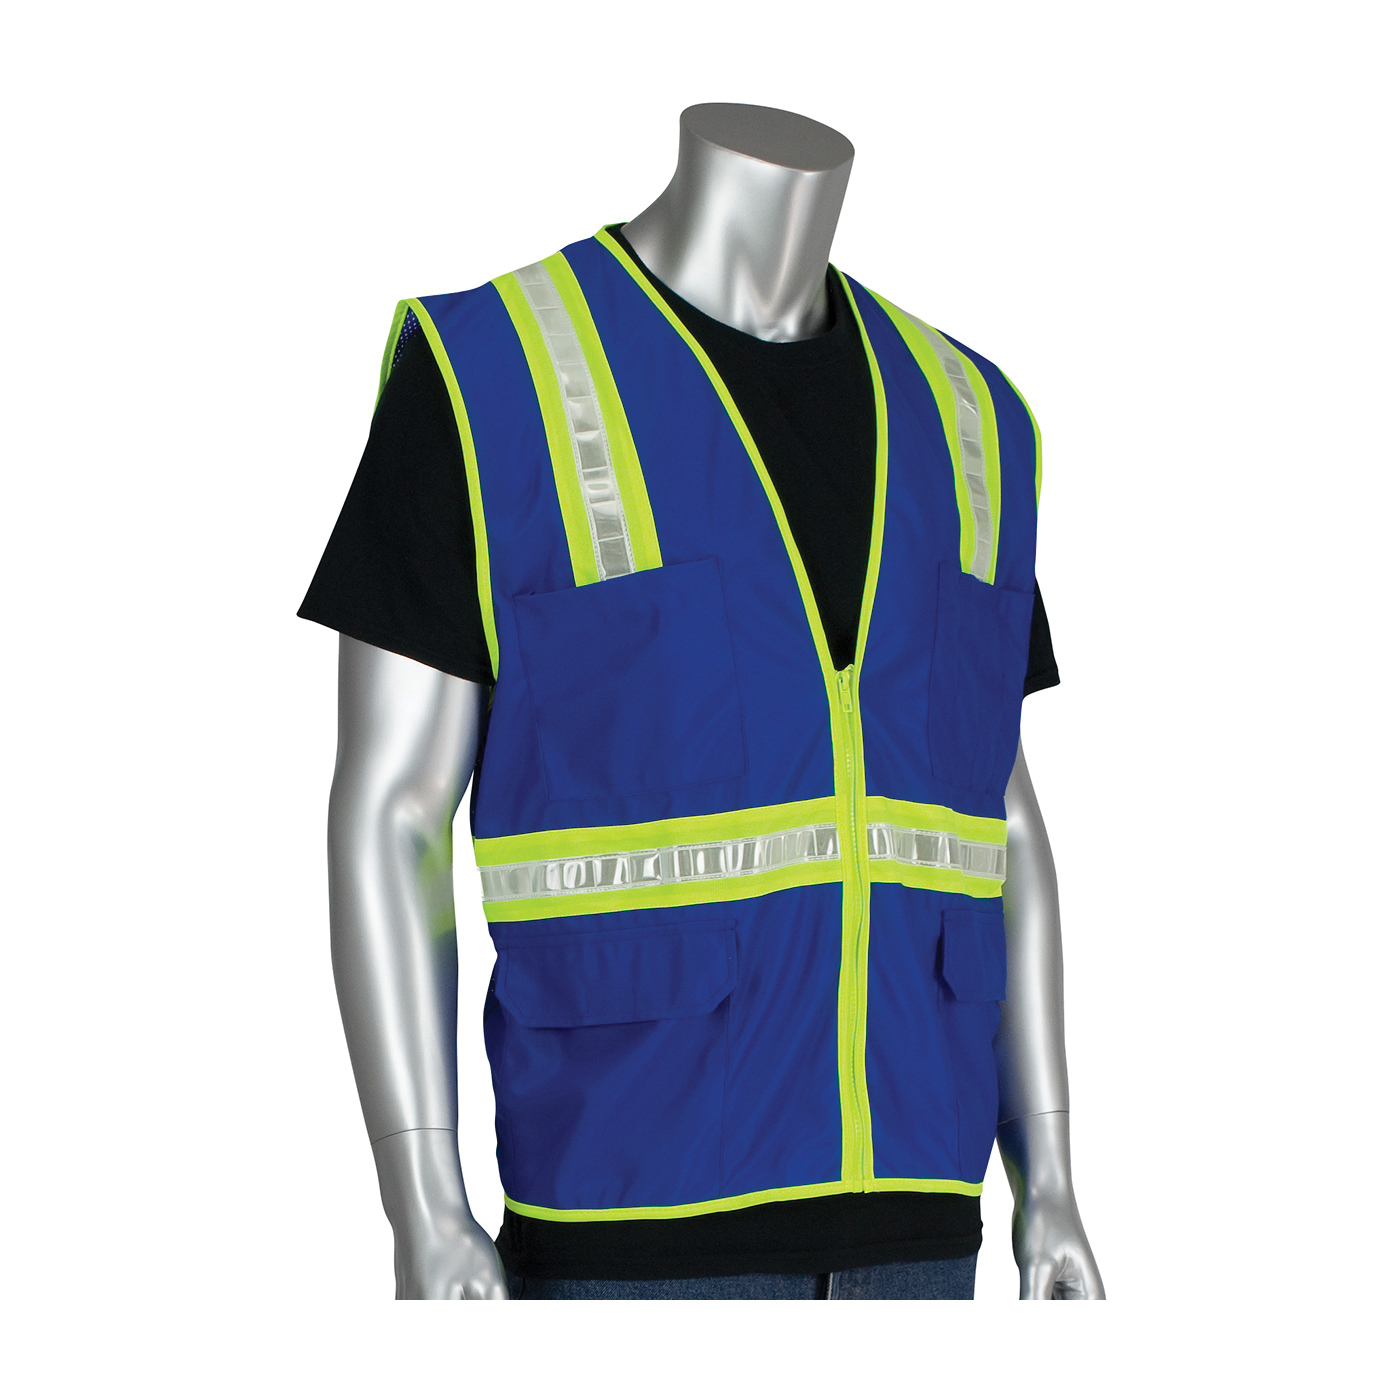 PIP® 300-1000-BL Non-ANSI Surveyor Safety Vest, 2XL, Blue, Polyester, Zipper Closure, 4 Pockets